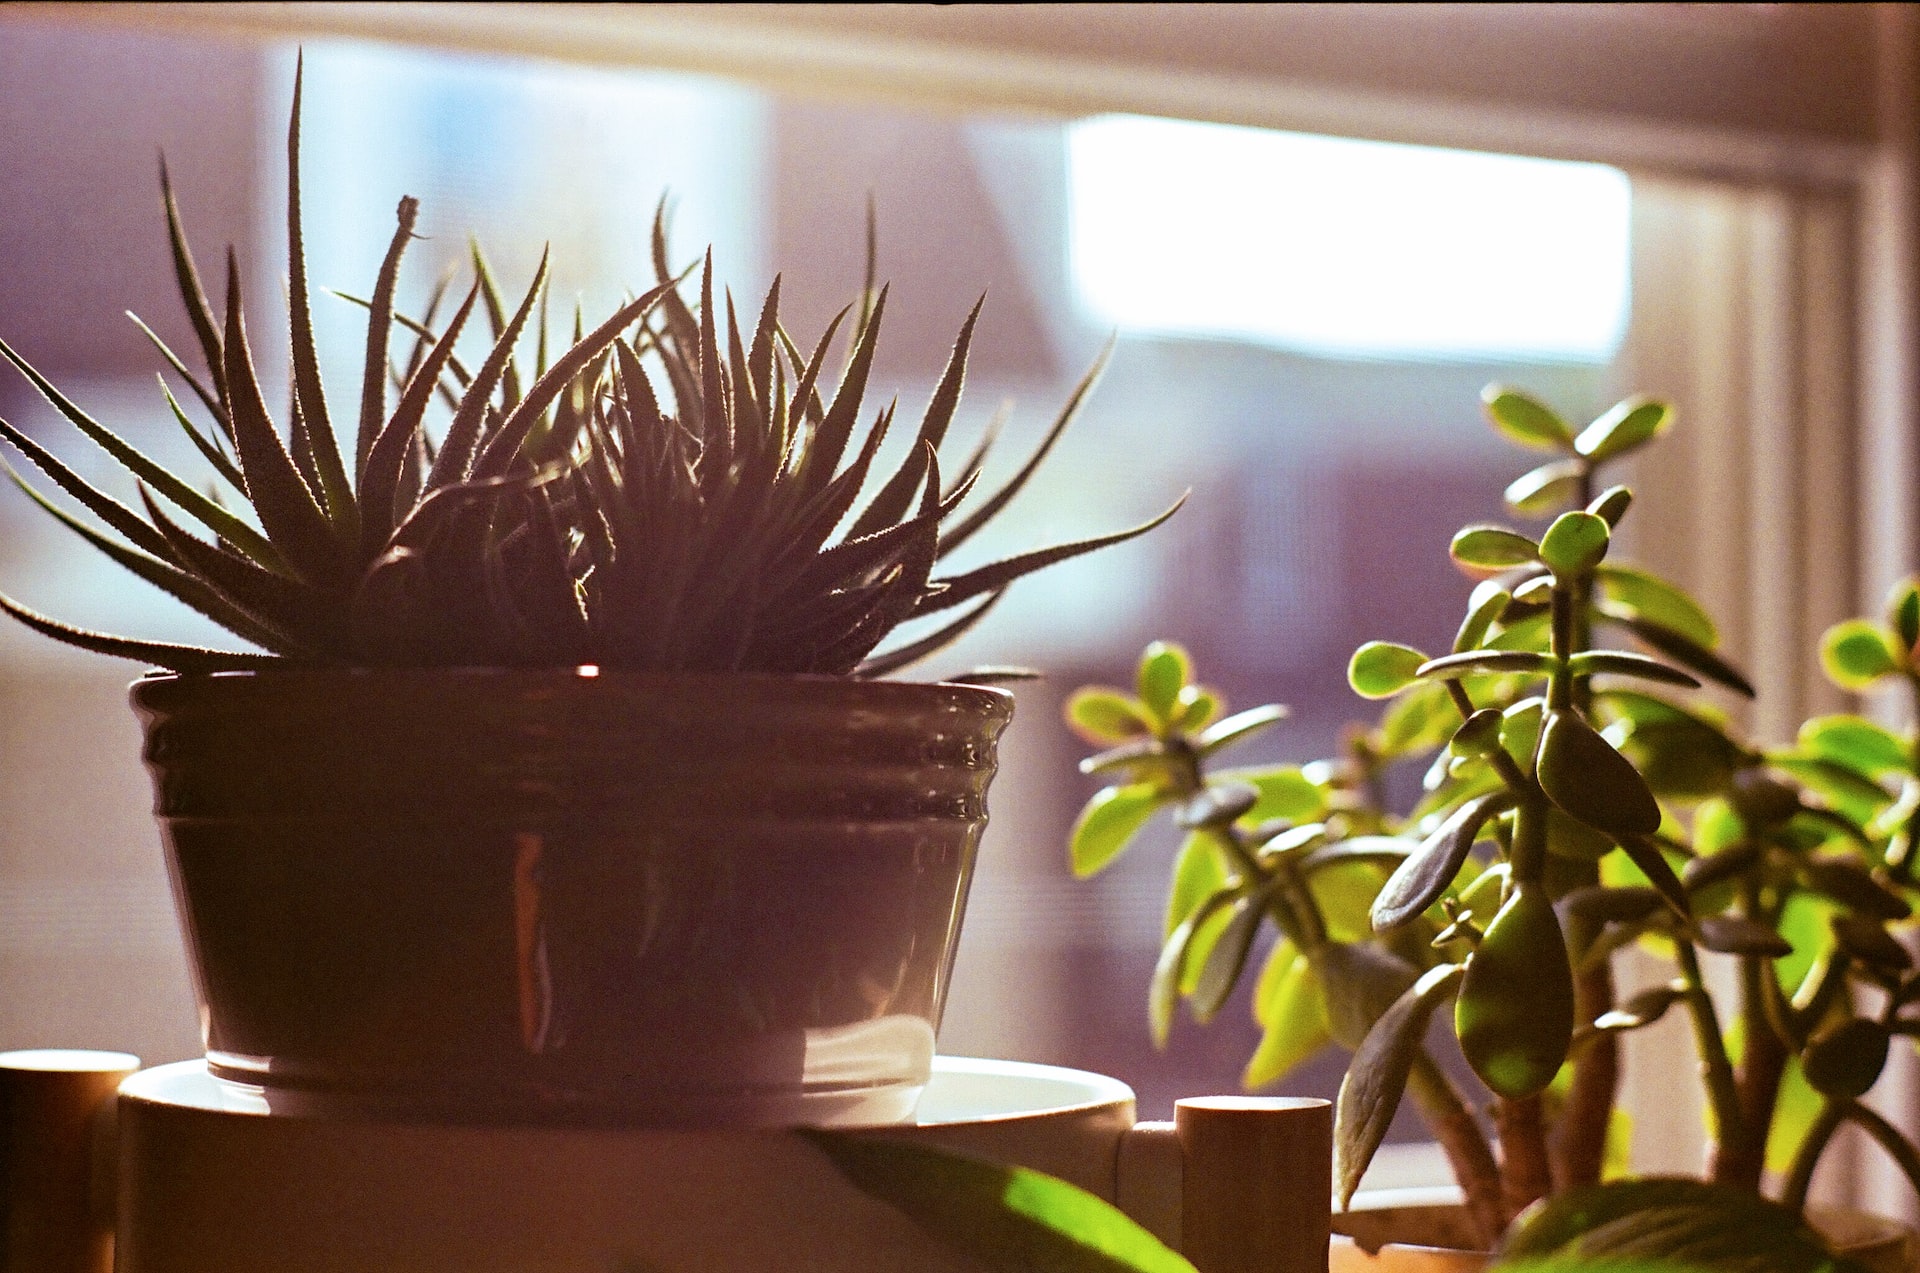 Creare un angolo di relax con piante in vaso.